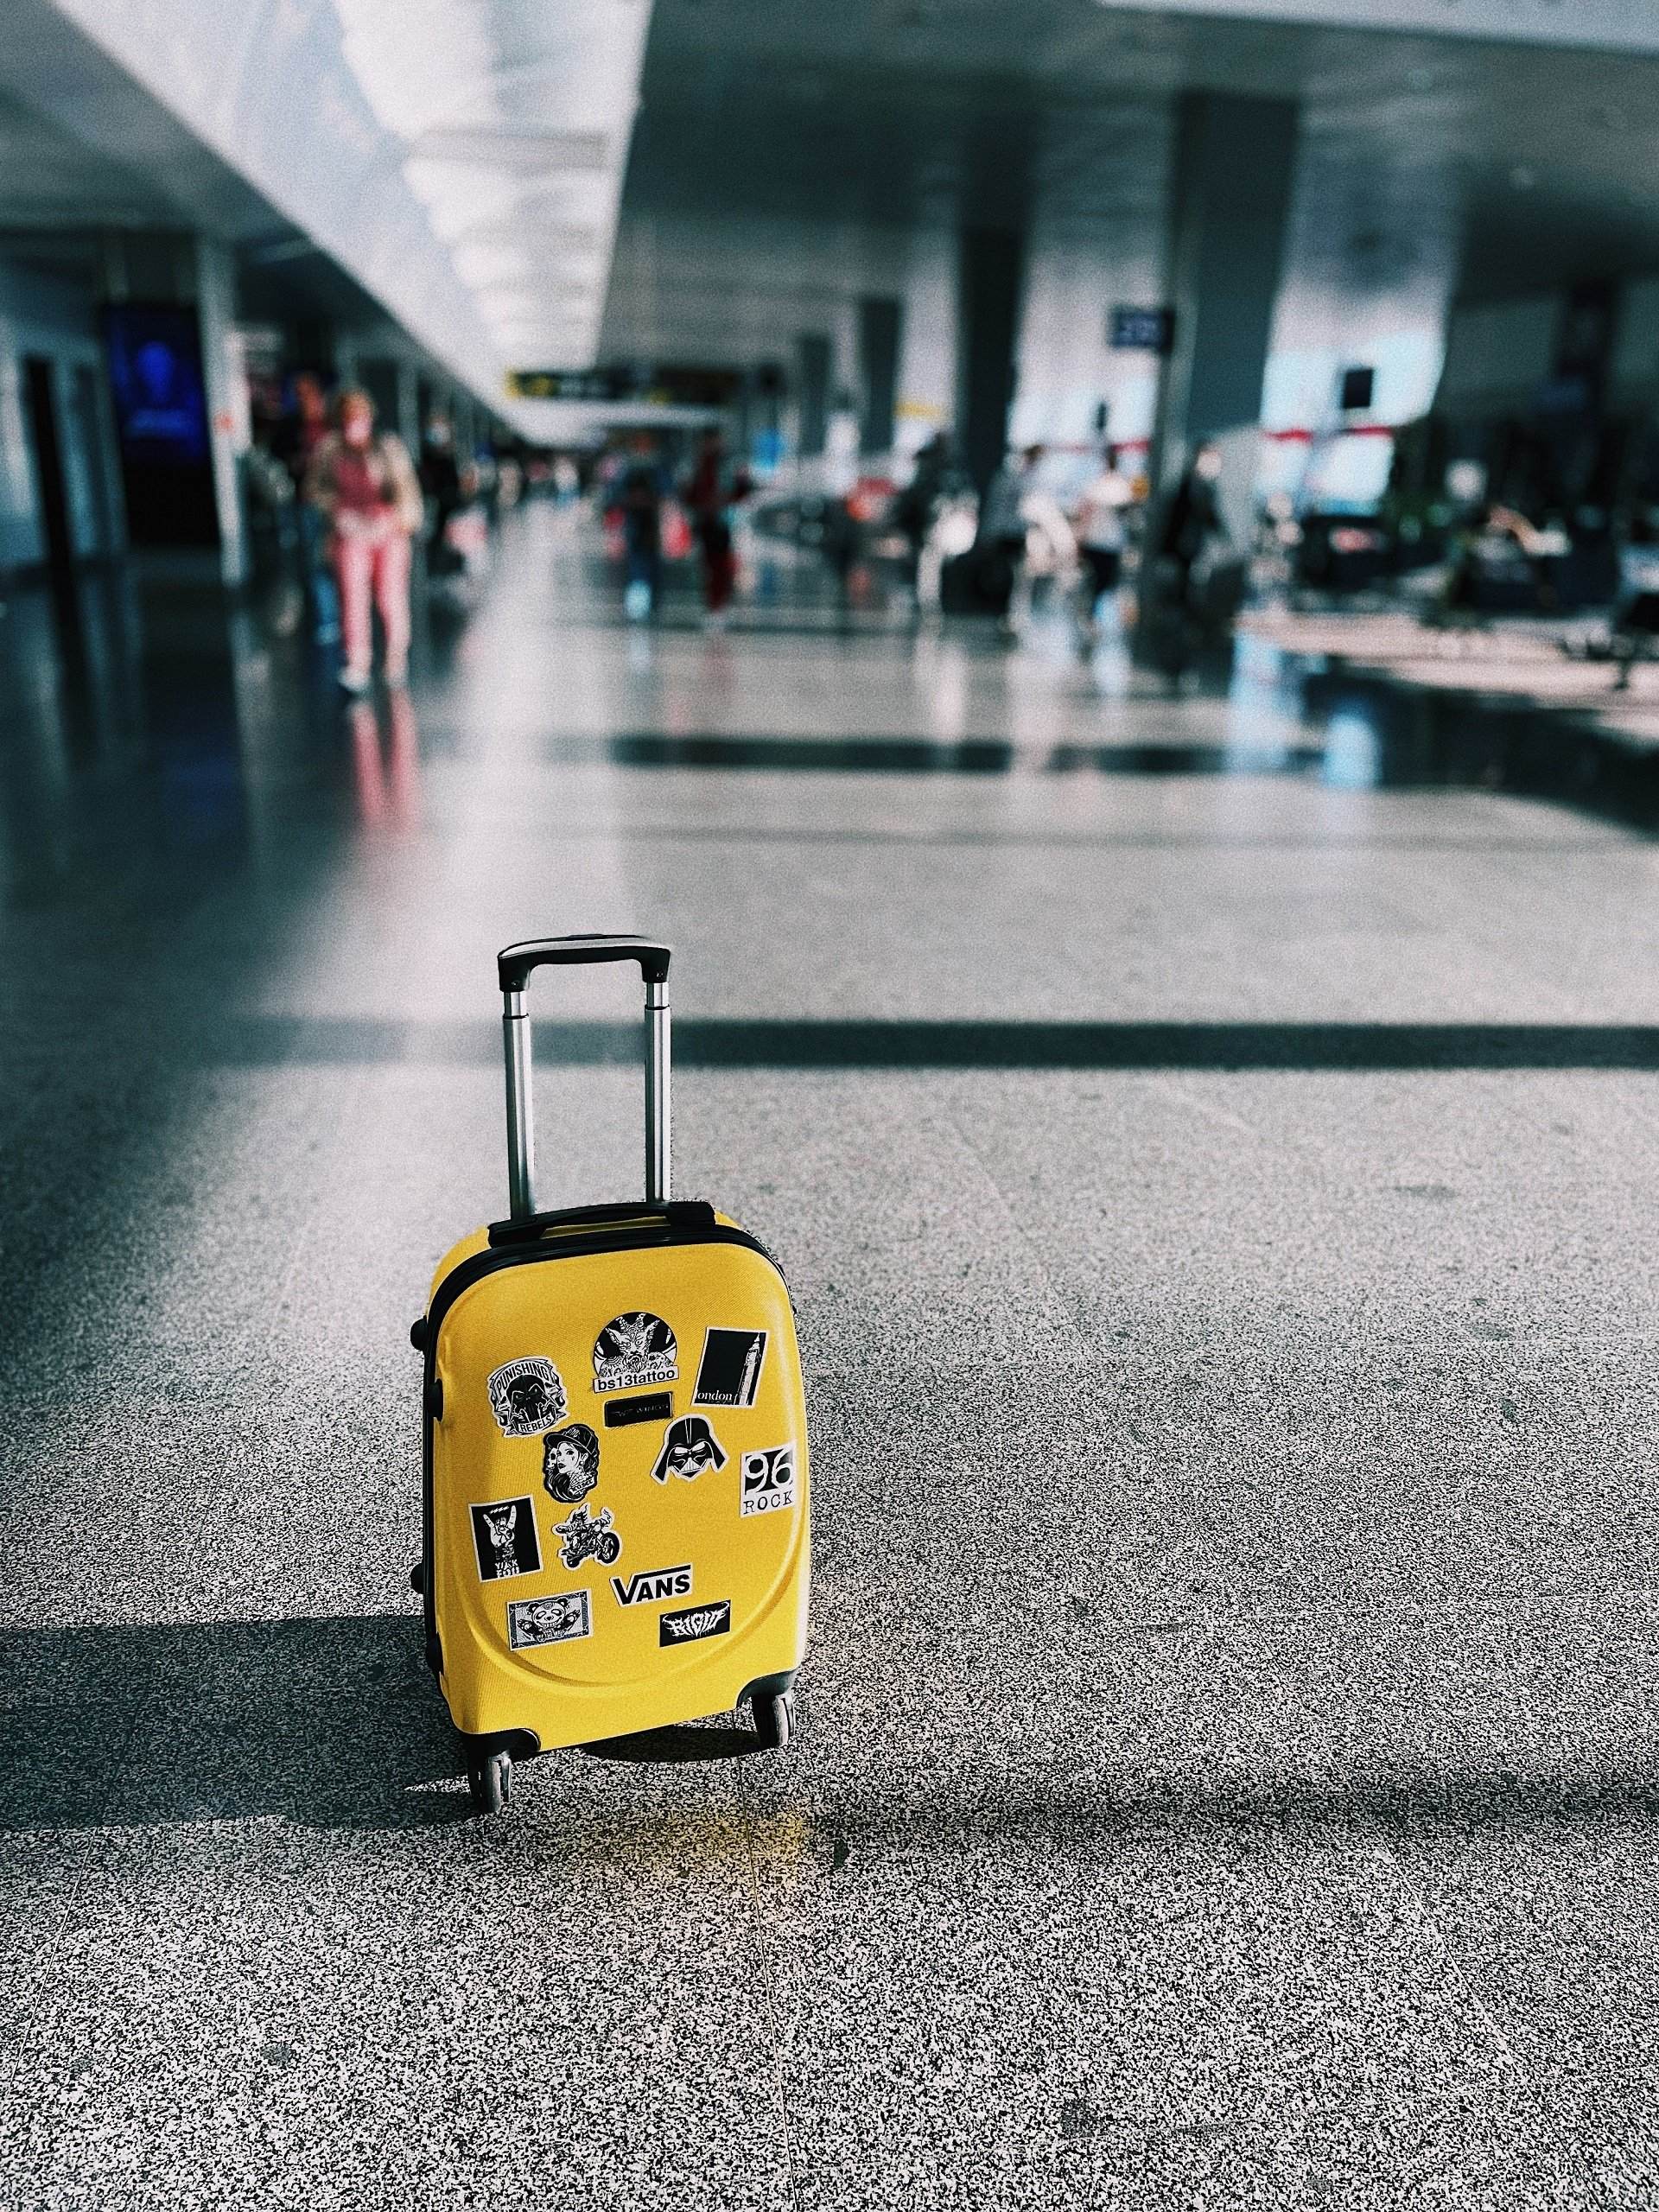 Adeu a pagar per les maletes de mà a l'avió? La UE podria obligar a la seva gratuïtat